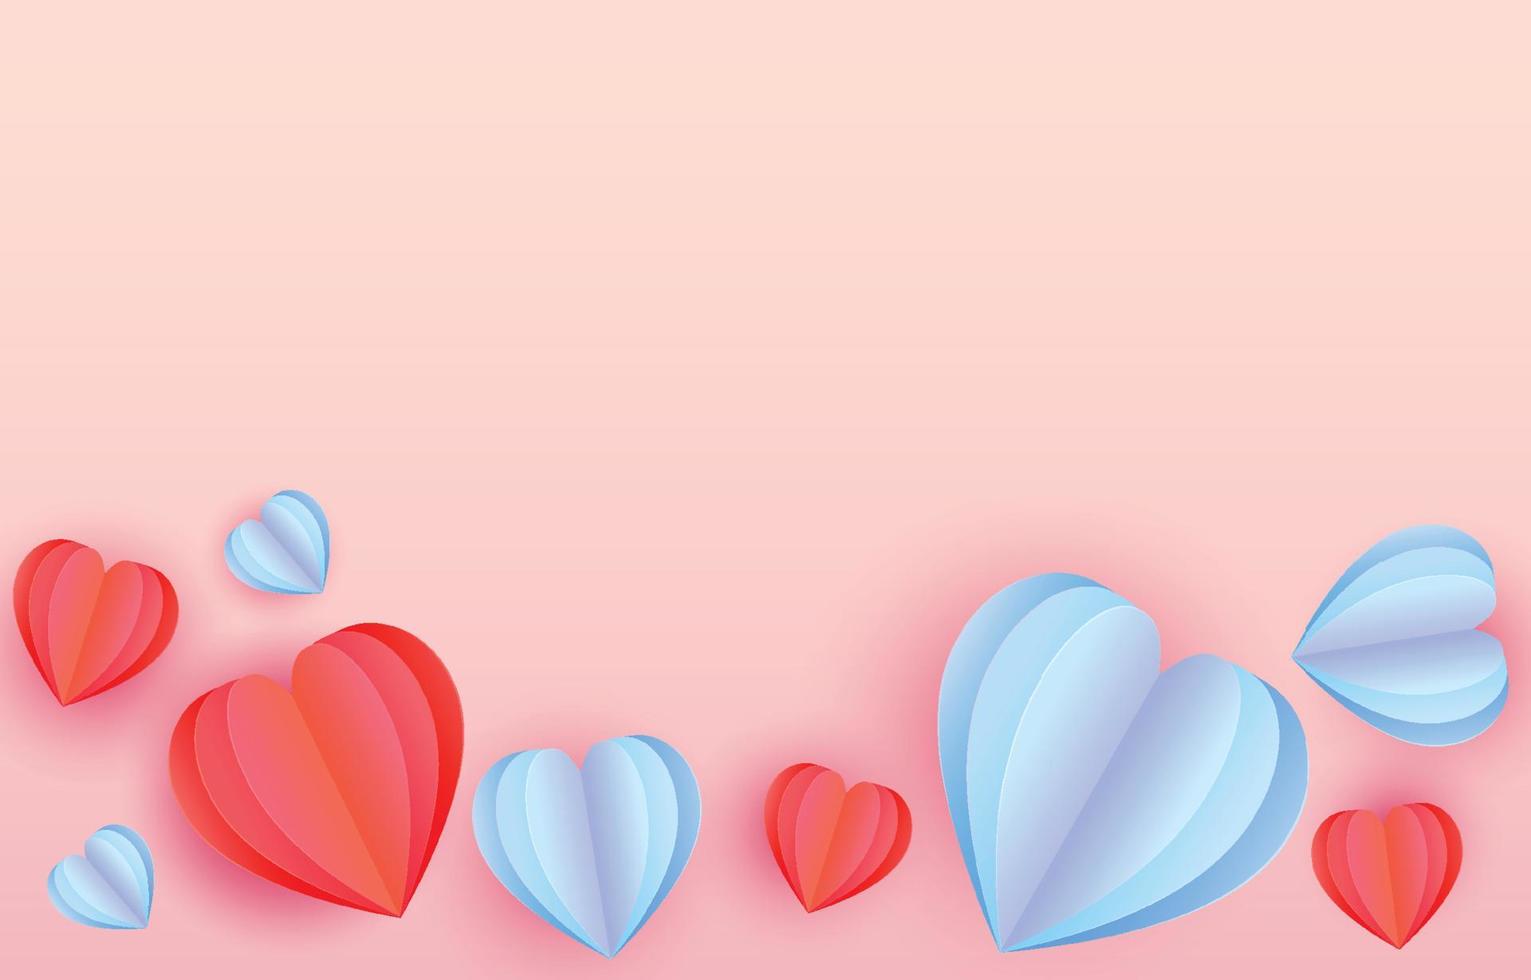 röd och blå papper skära element i form av hjärta. flygande på tömma rosa och ljuv bakgrund. vektor symboler av kärlek för Lycklig hjärtans dag, födelsedag hälsning kort design.